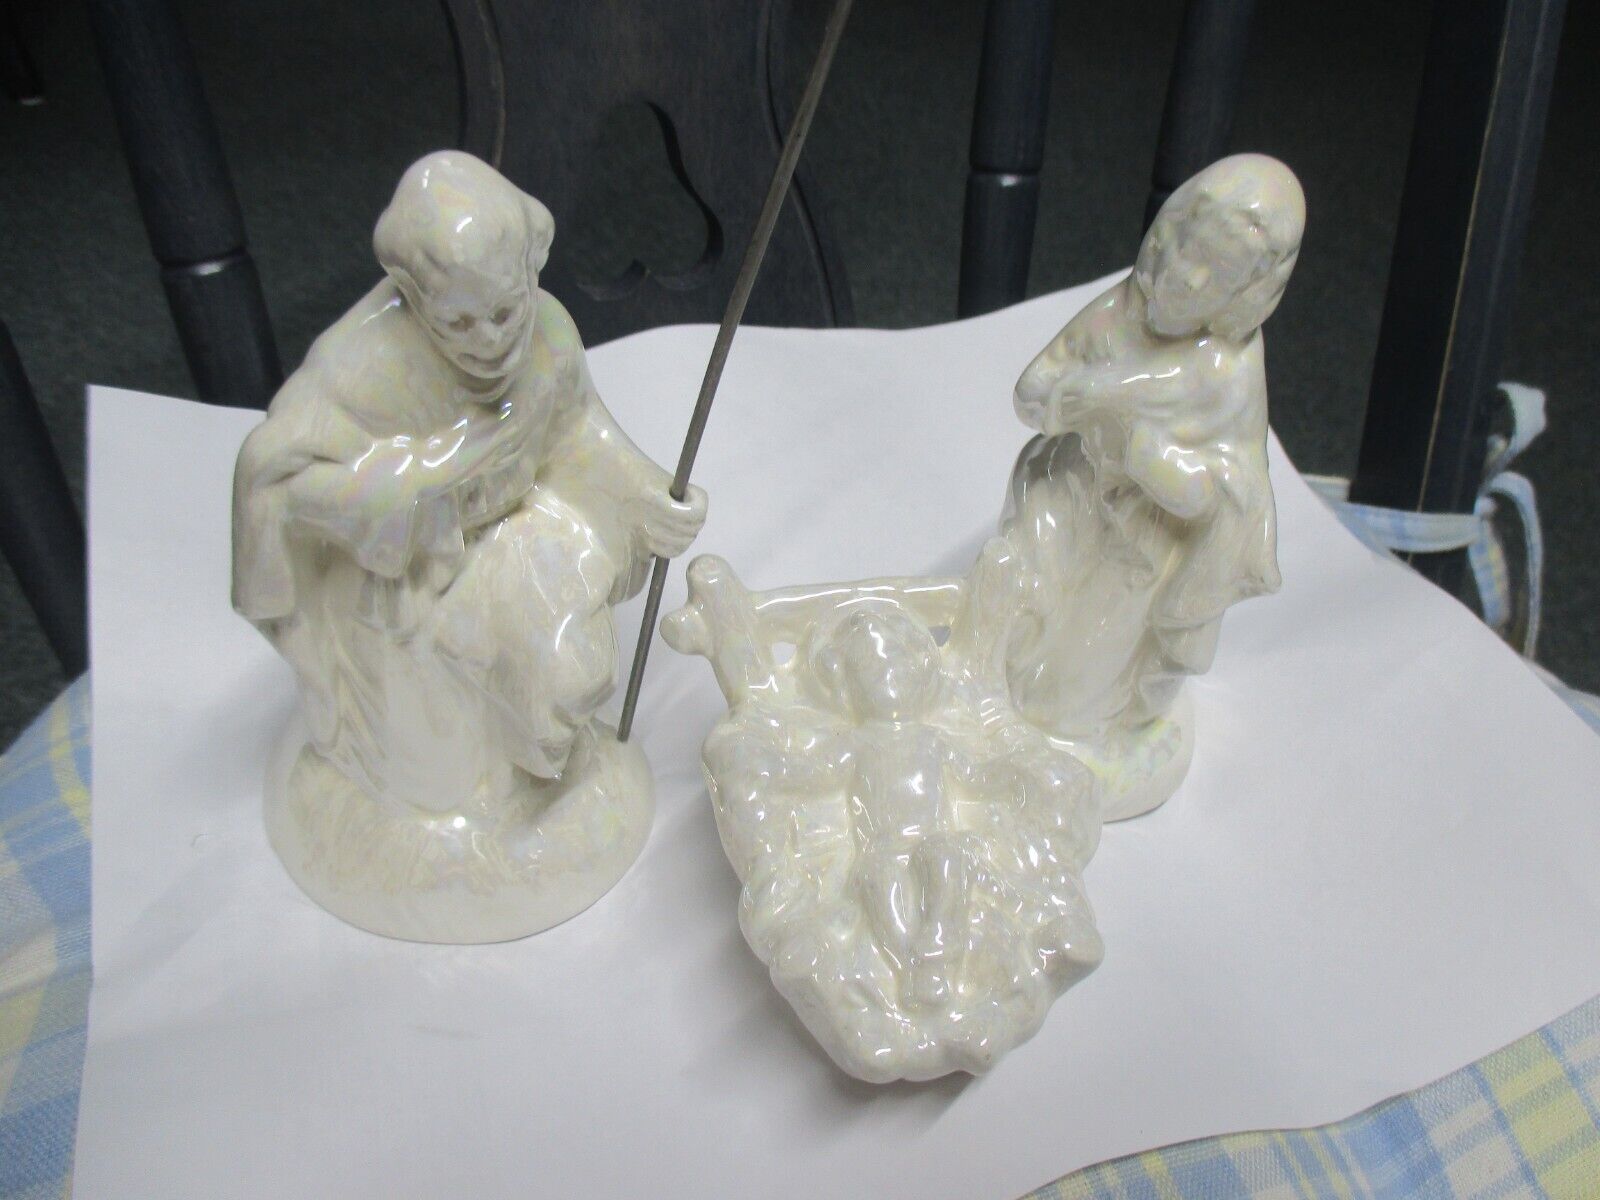 3 Piece Ceramic Nativity Set Iridescent Nativity Set Christmas Decor 5\